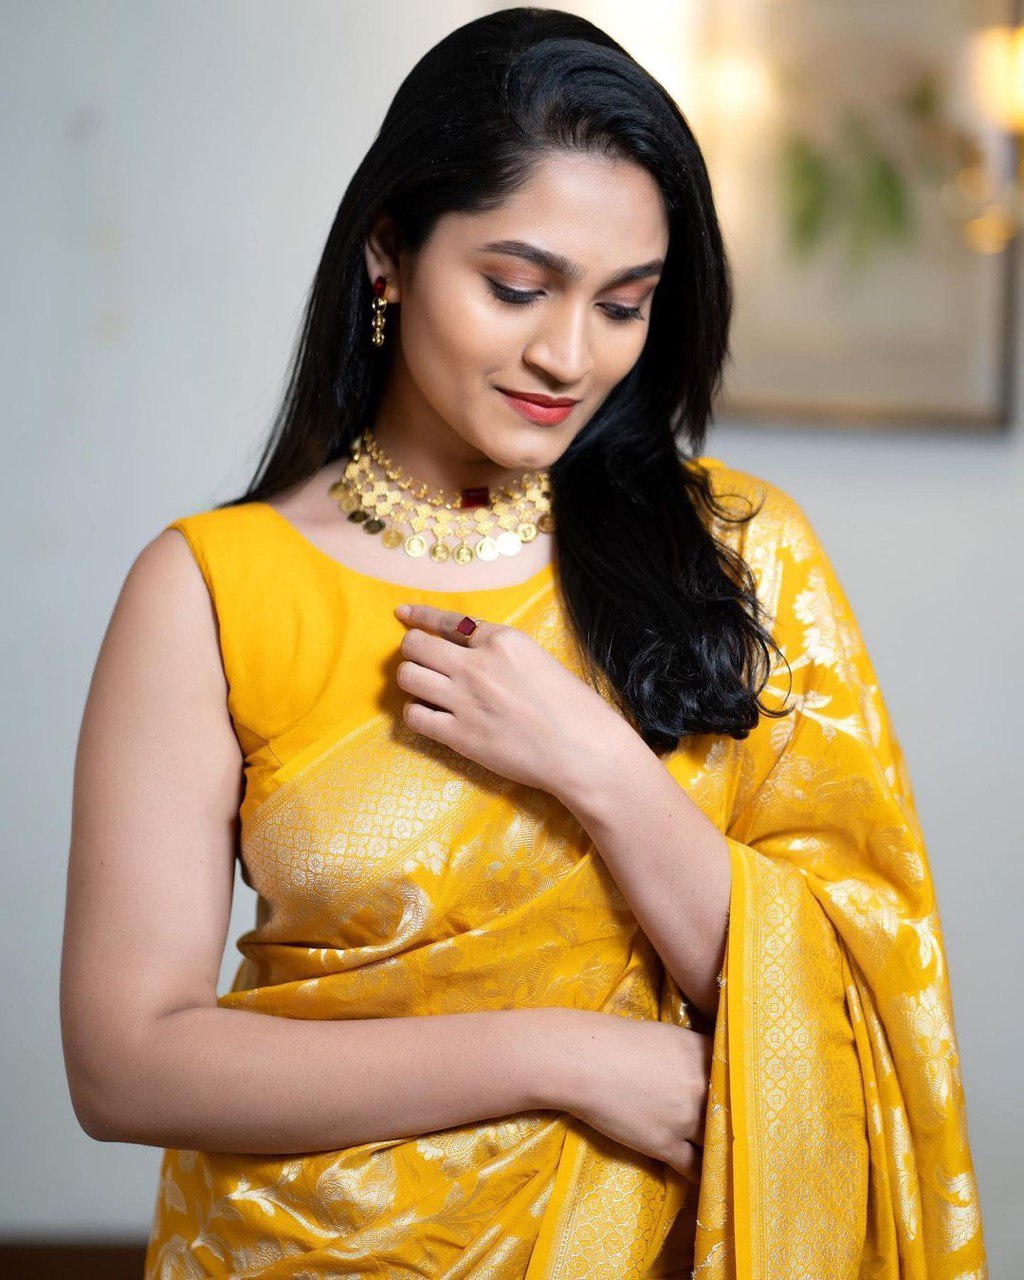 Elegant Yellow Color Soft Banarasi Silk Saree With Blouse Piece